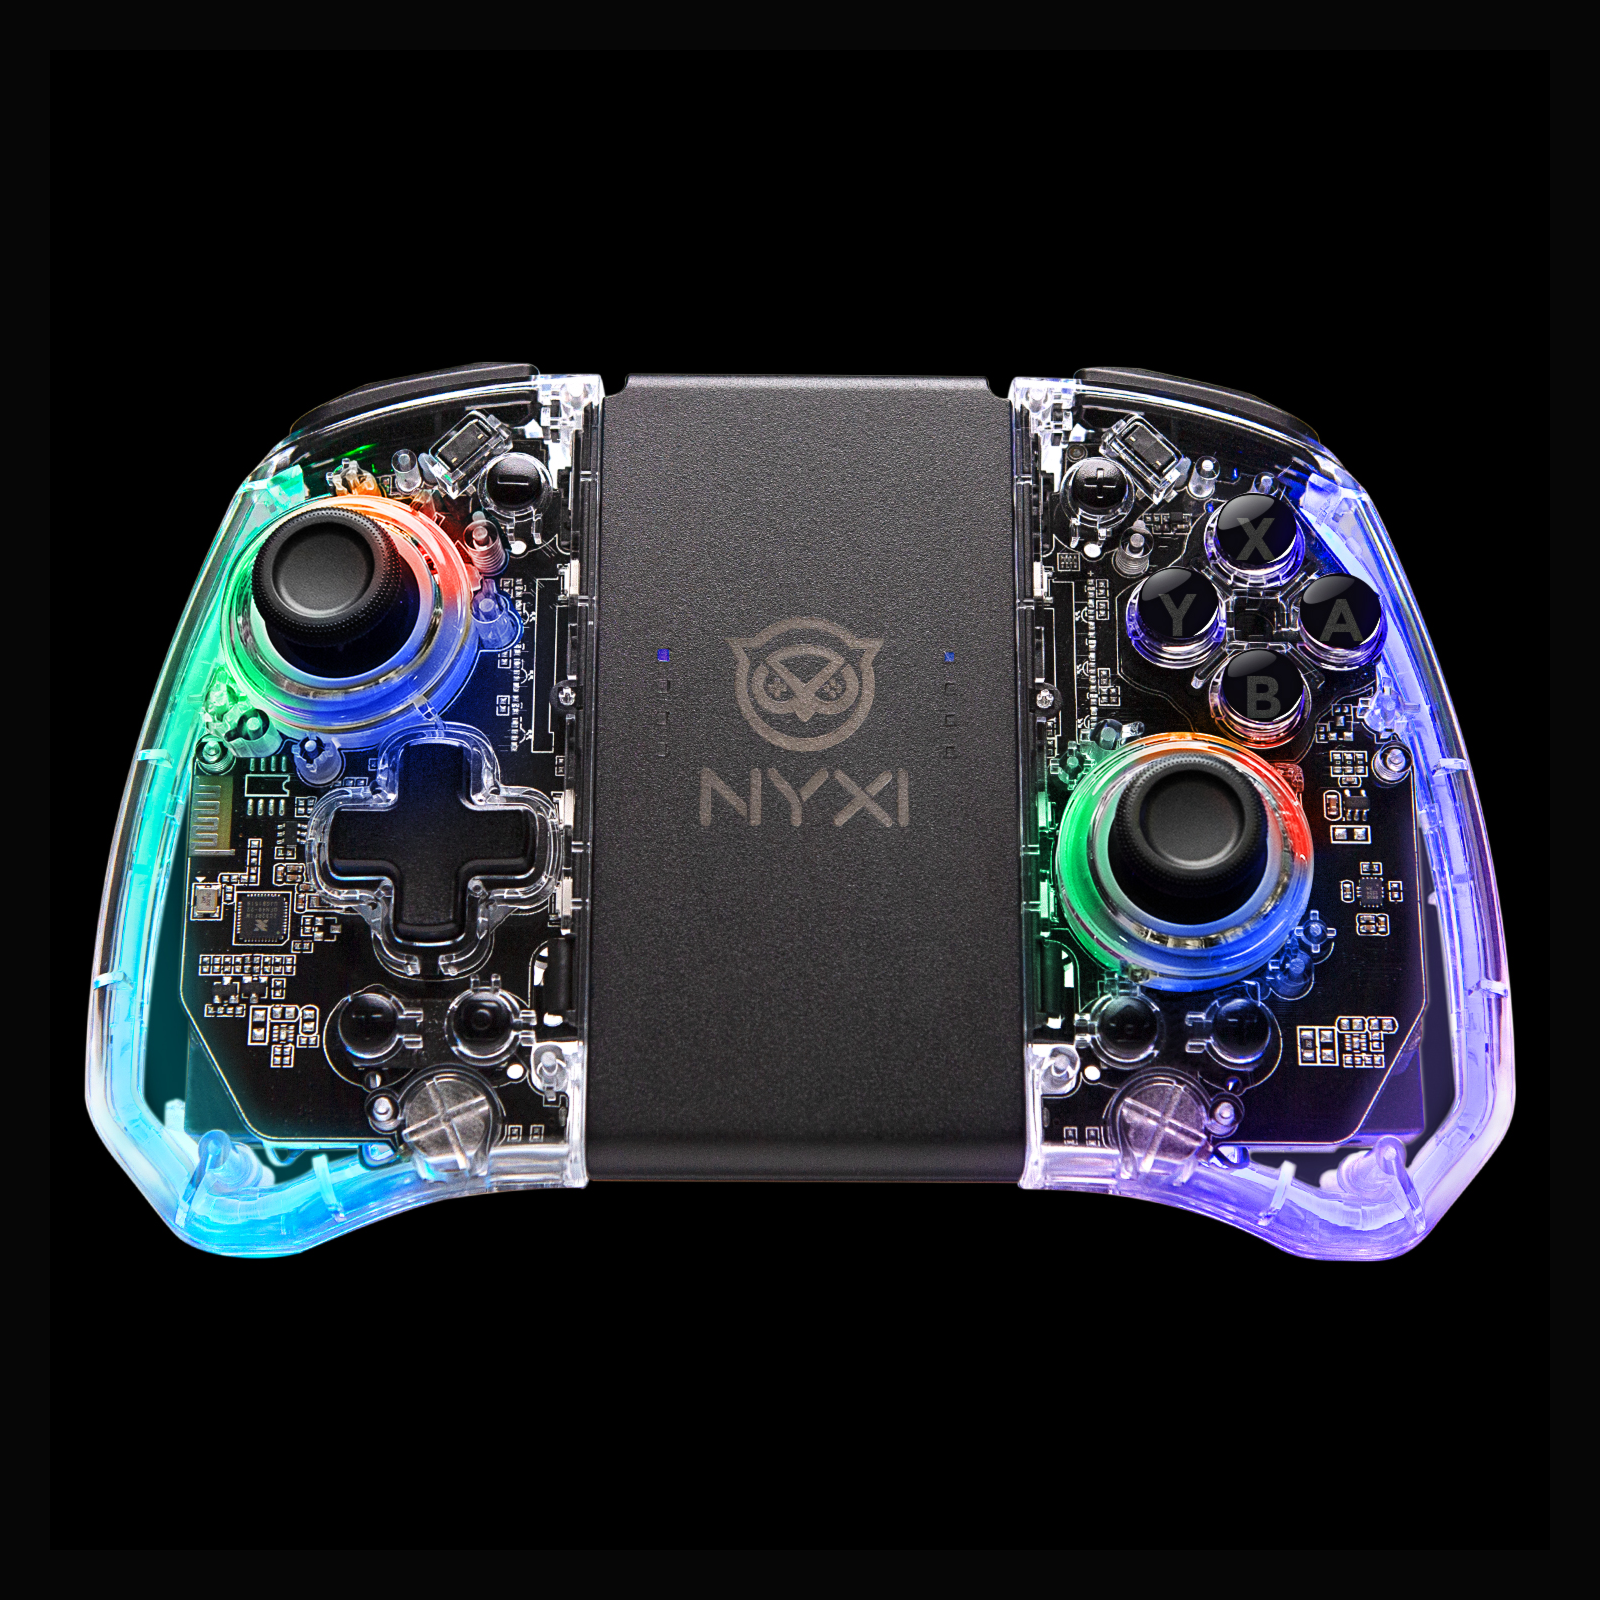 NYXI Wireless Joy-Pads for the Nintendo Switch